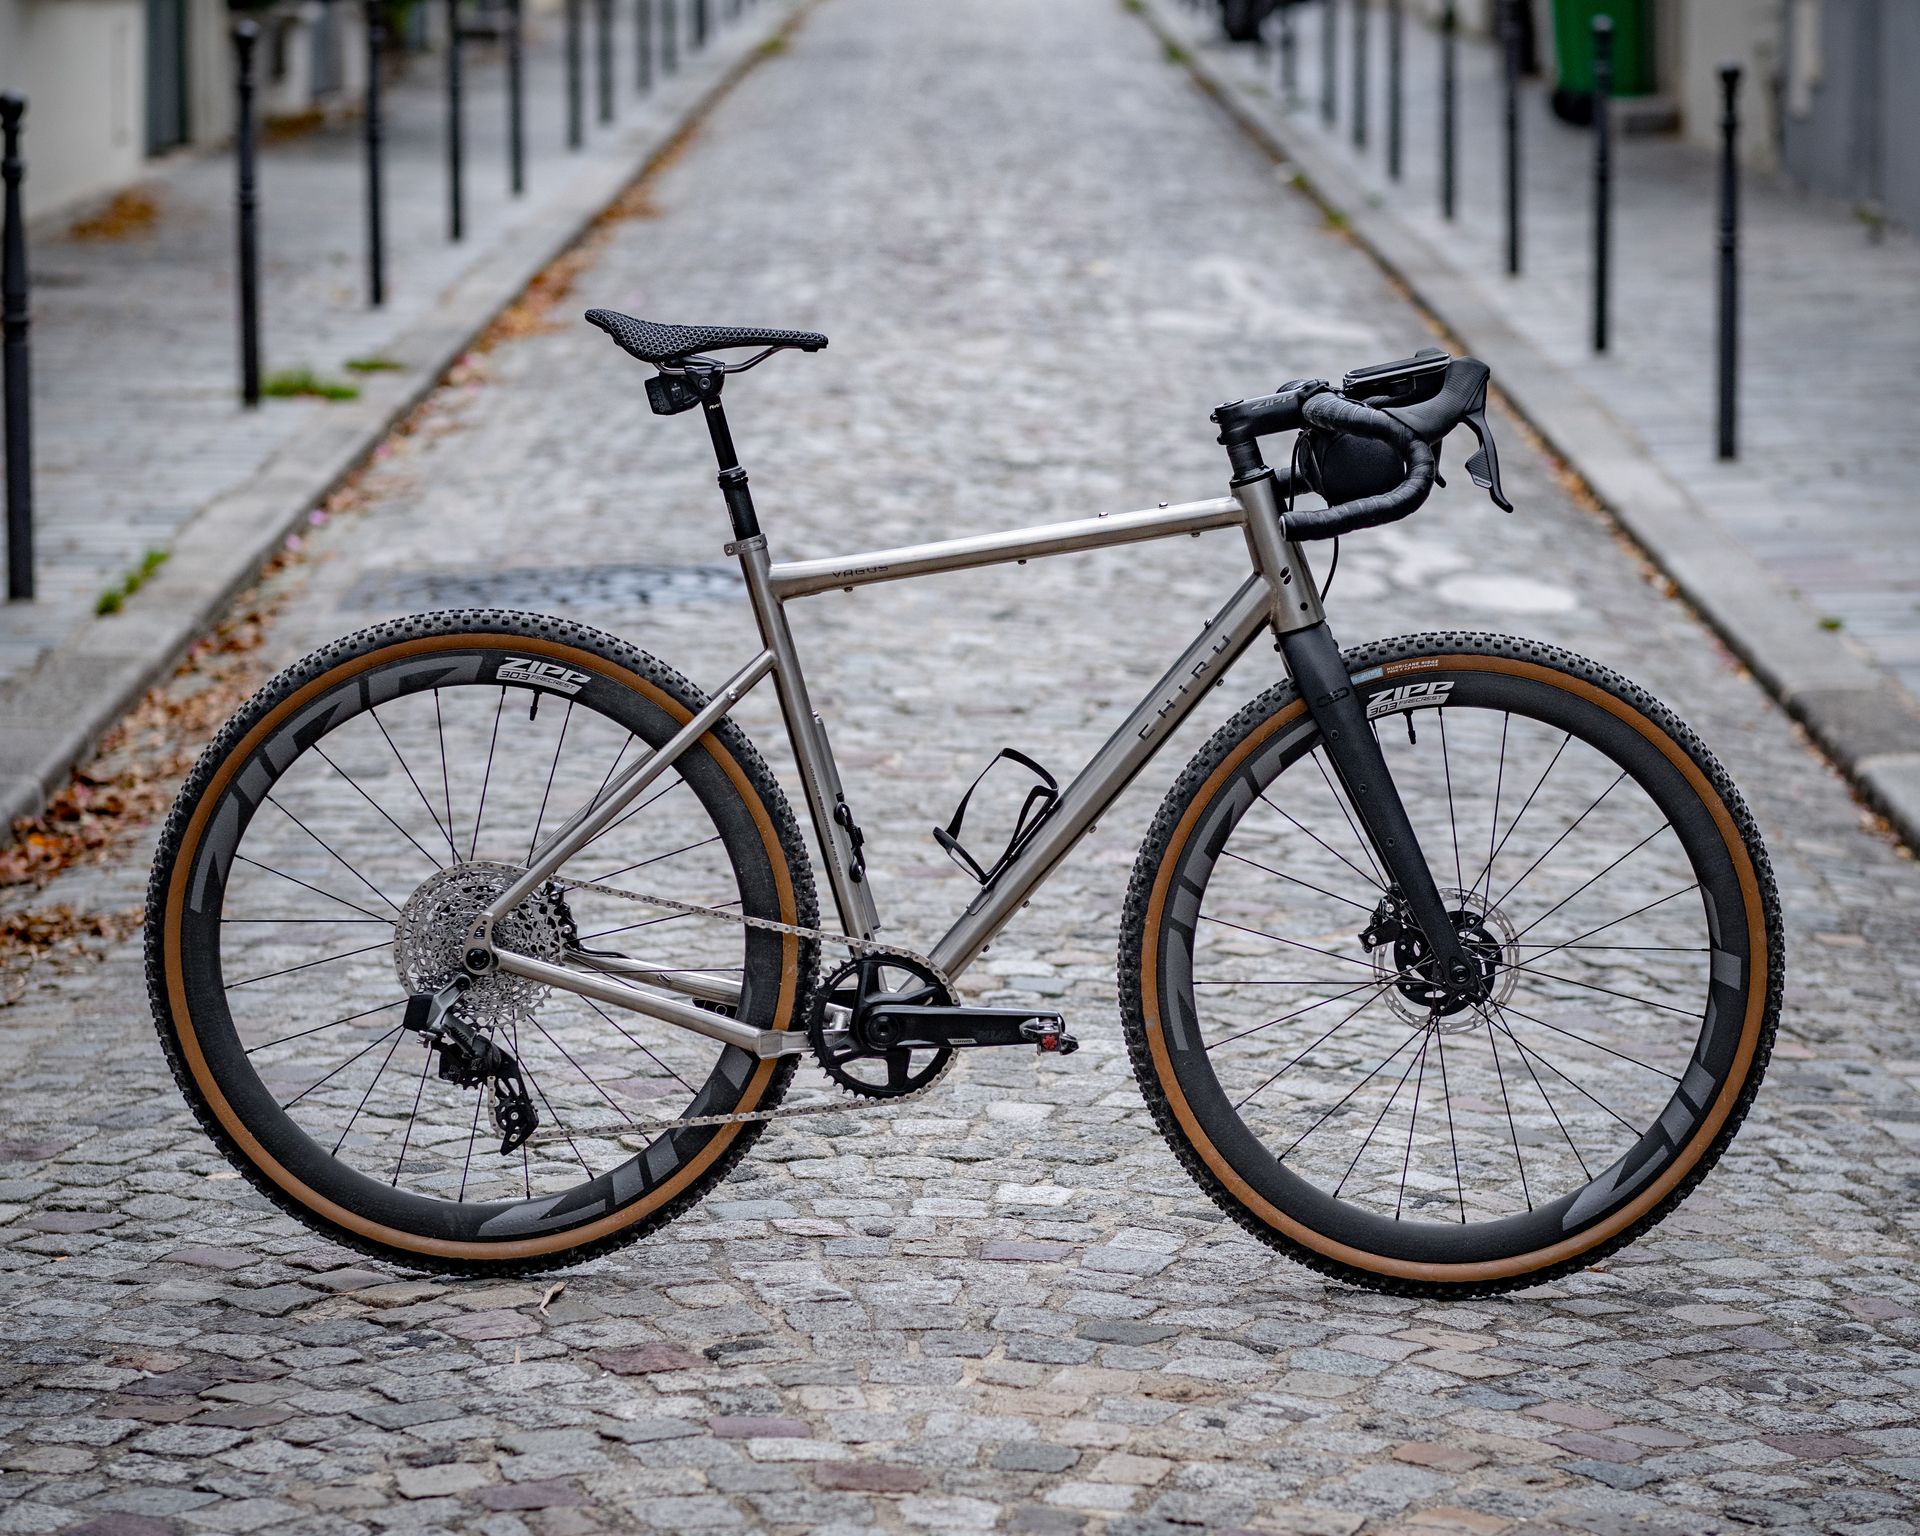 Magasin de cycles et atelier de réparation velo et montage vélo à la carte à Paris 13eme spécialisé dans le gravel et le voyage. cadre titane, fourche carbone, roues carbone Zippspeed, Sram AXS XPLR monoplateau